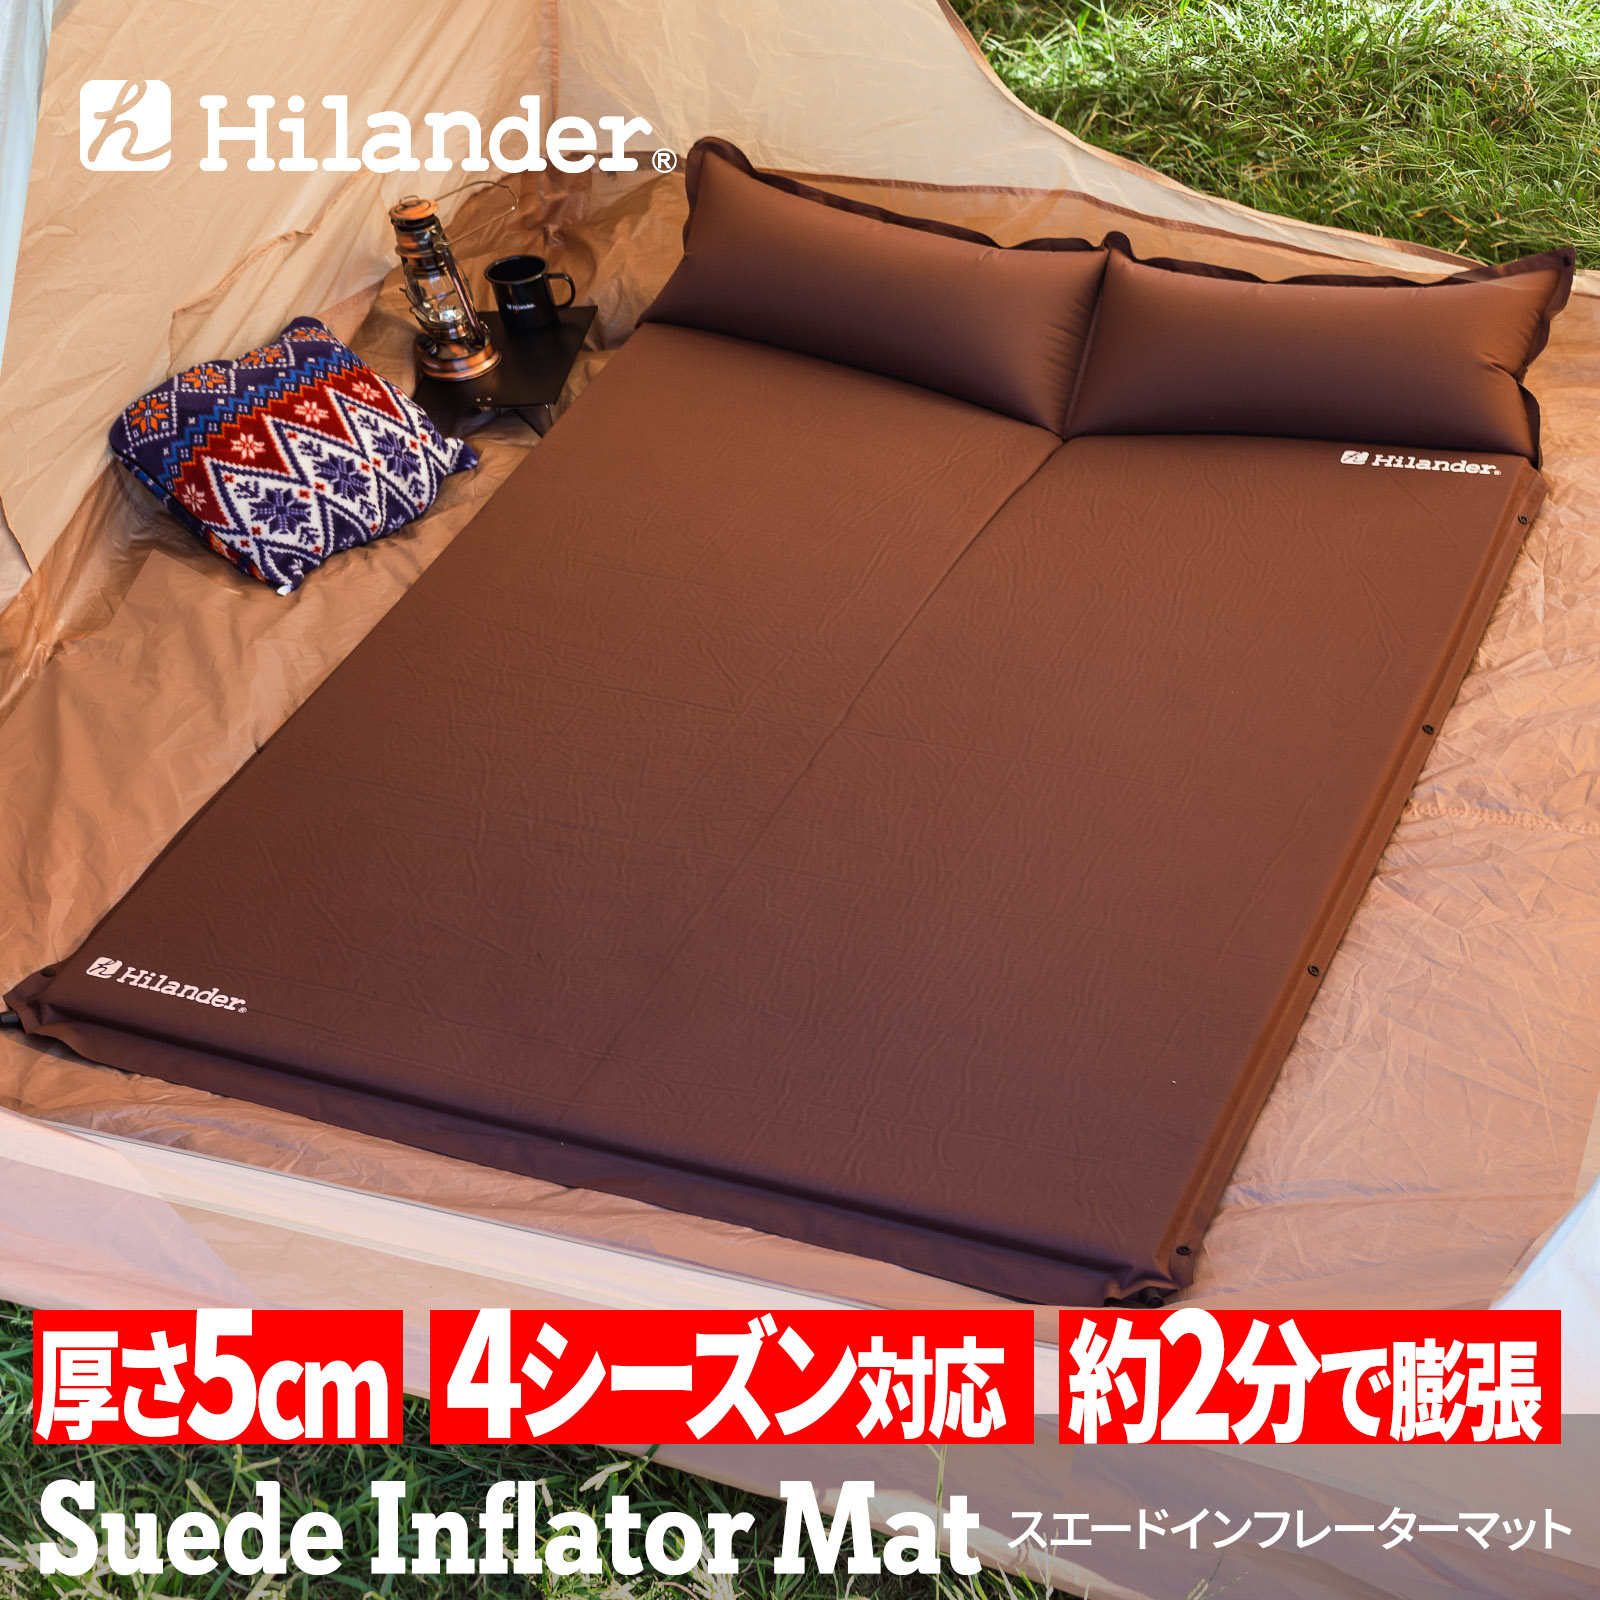 スエードインフレーターマット2(ポンプバッグ付き) 5.0cm【1年保証】 ダブル ブラウン